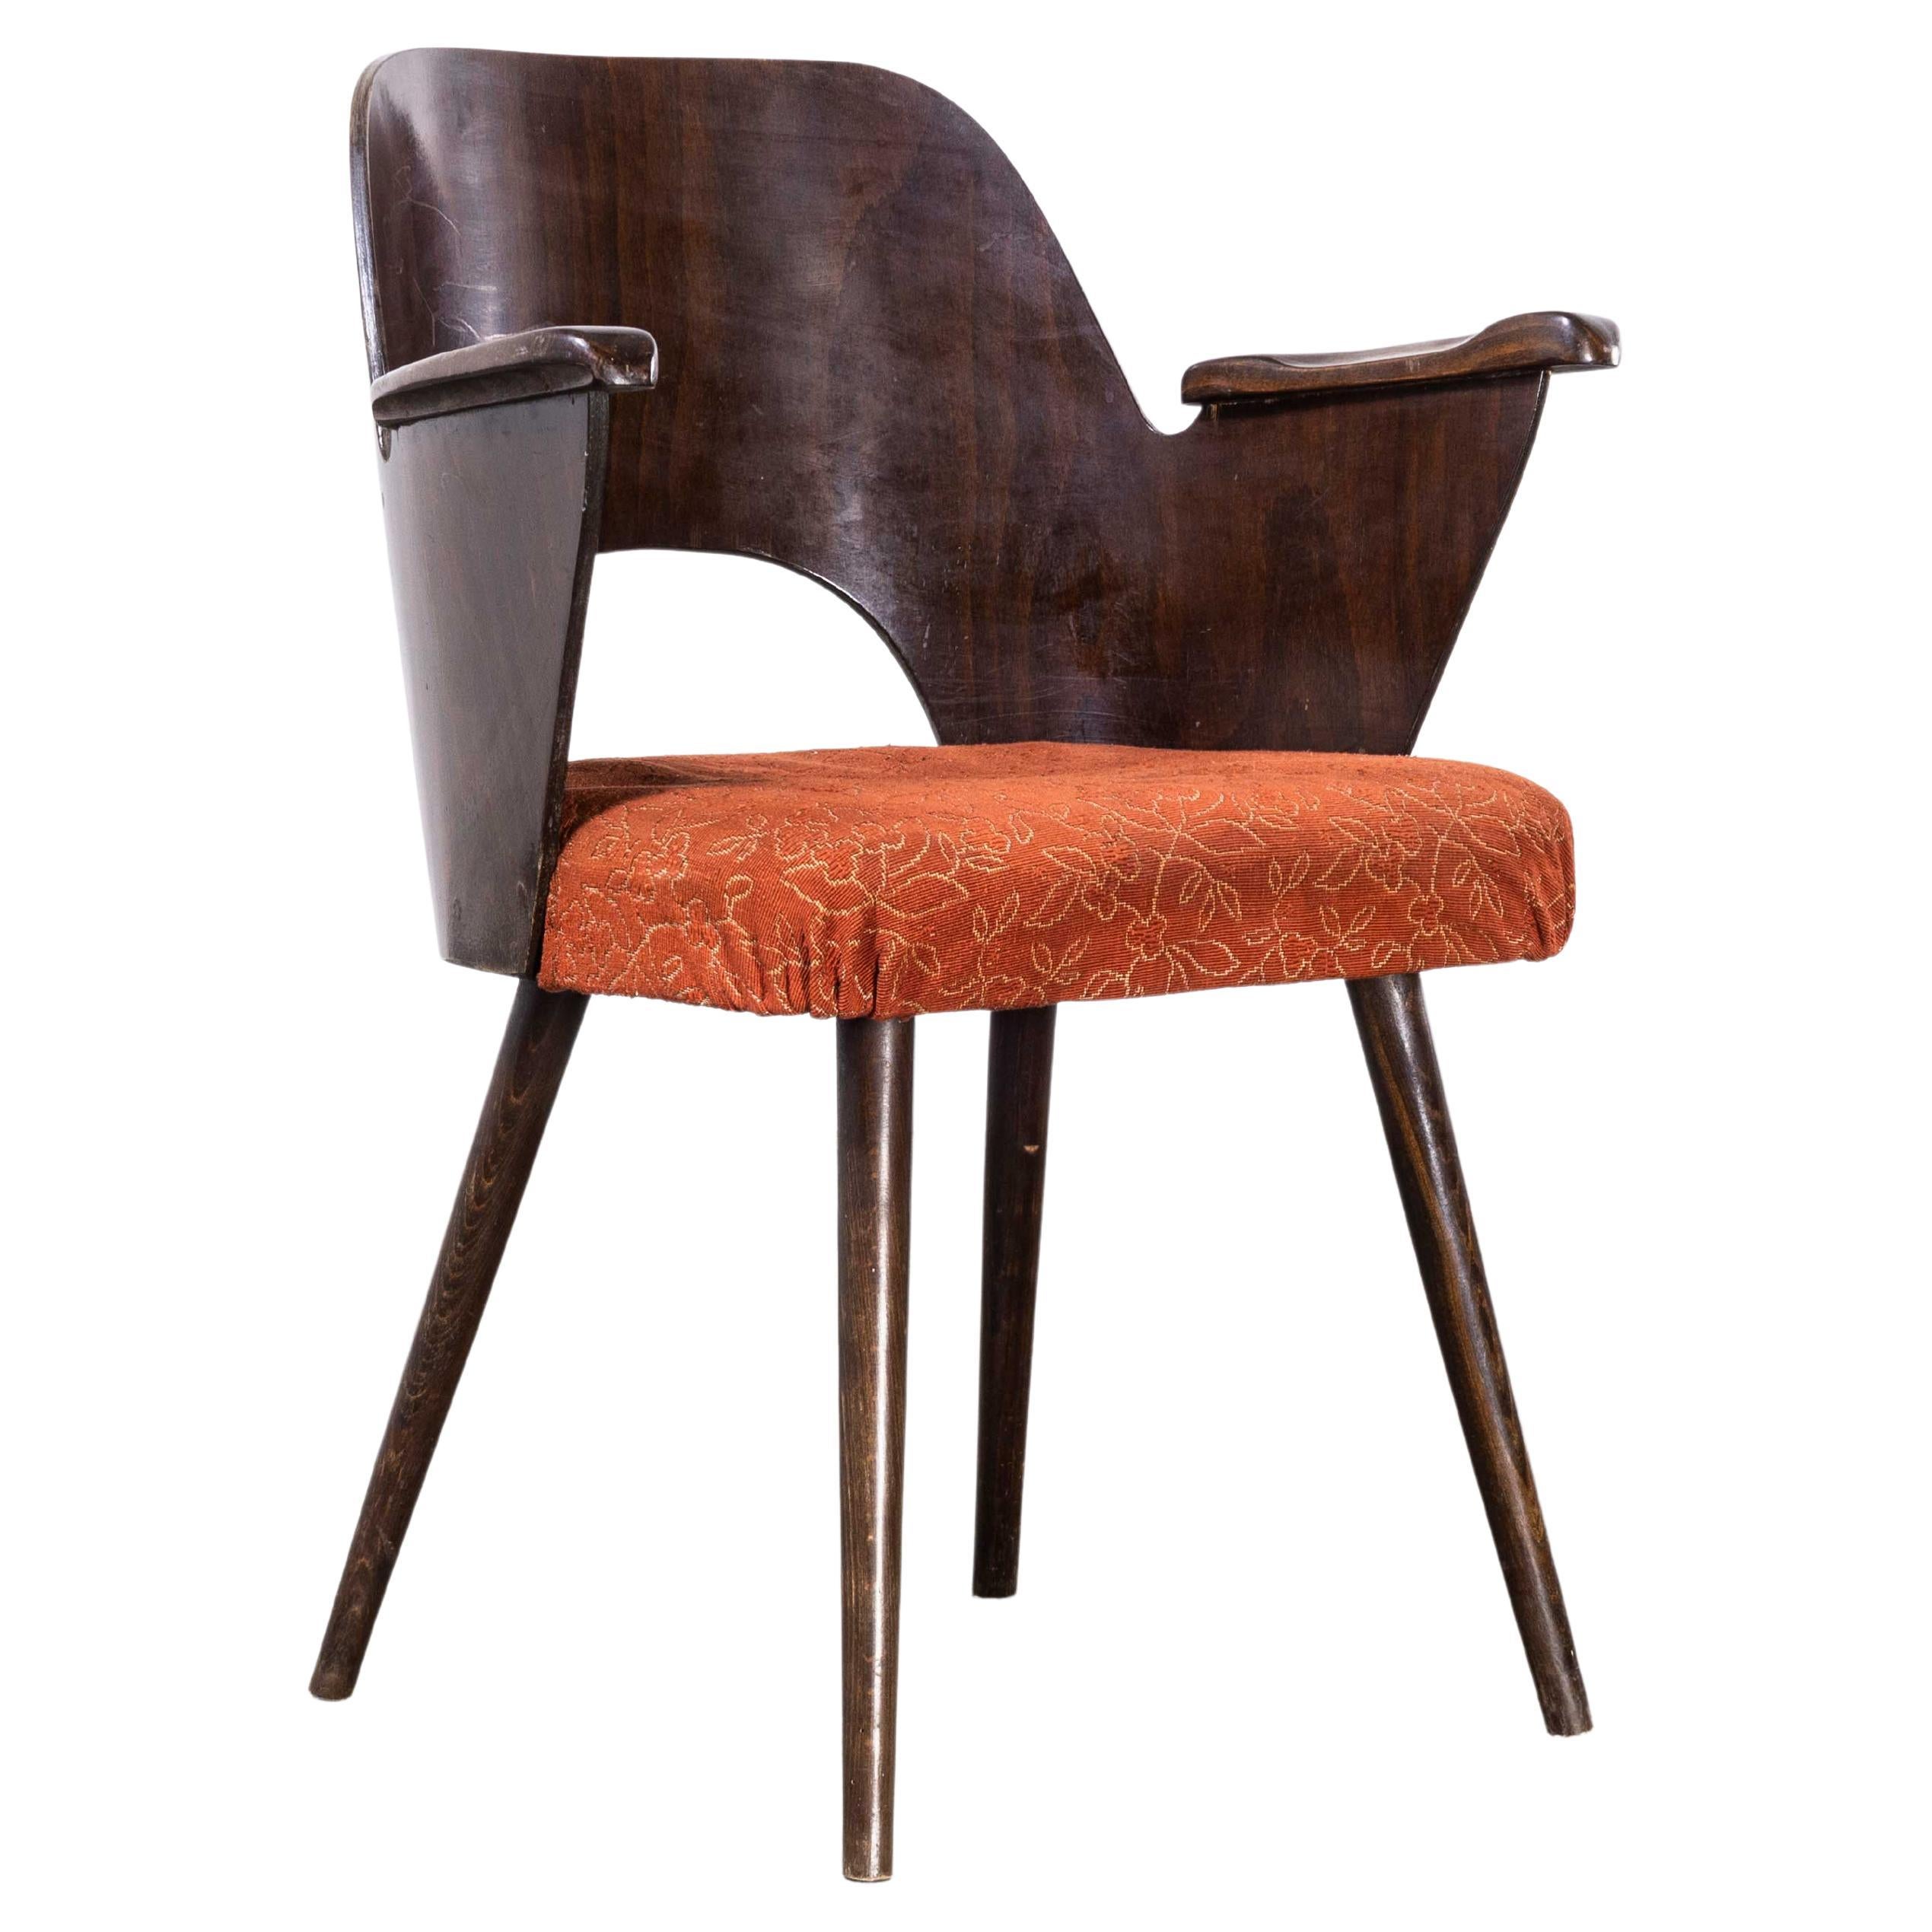 1950's Dark Walnut Upholstered Side Chair, Oswald Haerdt Model 515 For Sale